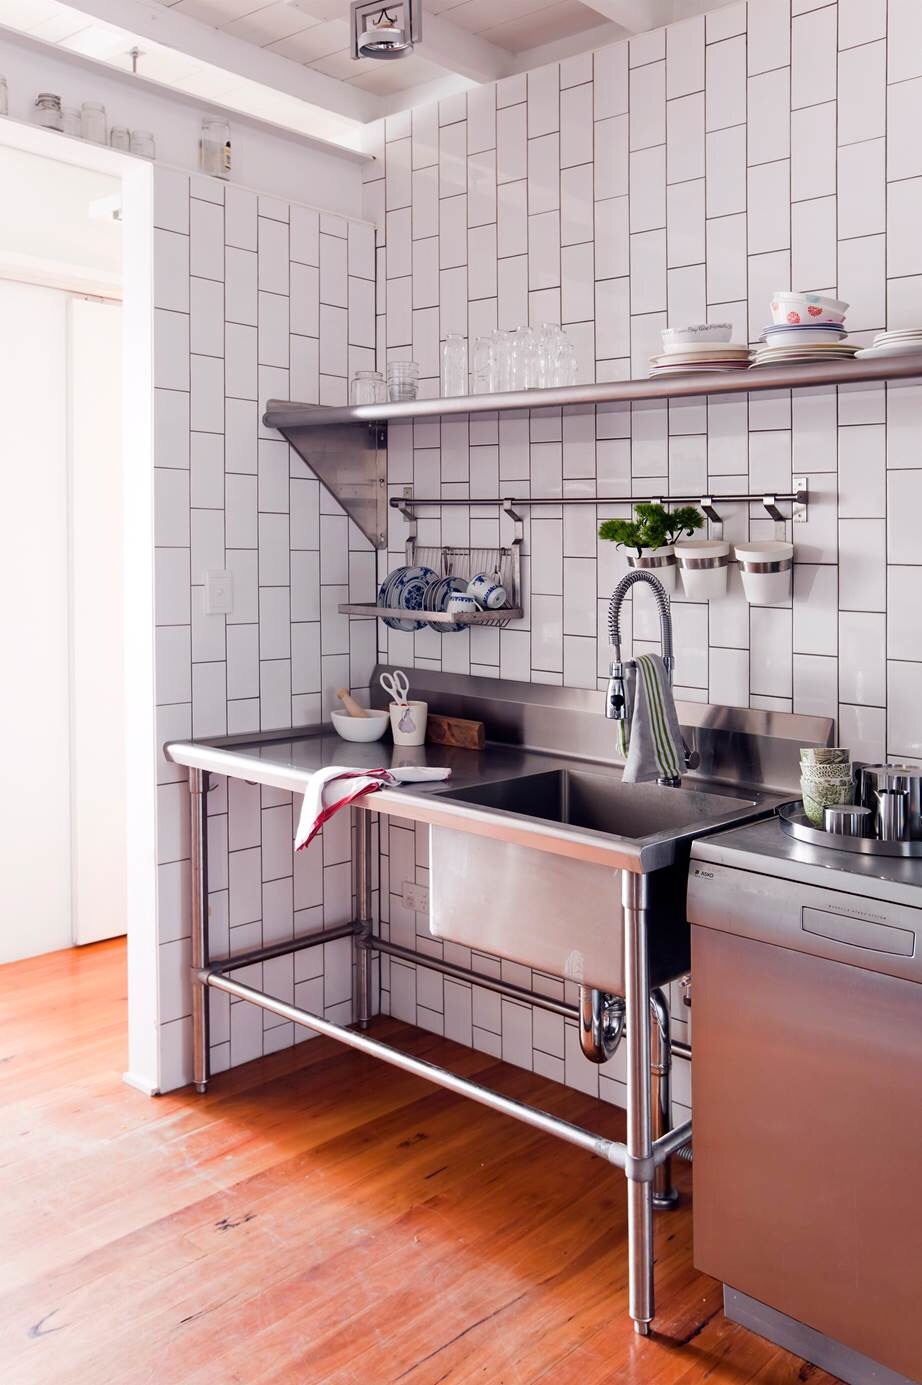 olliePop Design // Inspiration : Kitchen Sinks